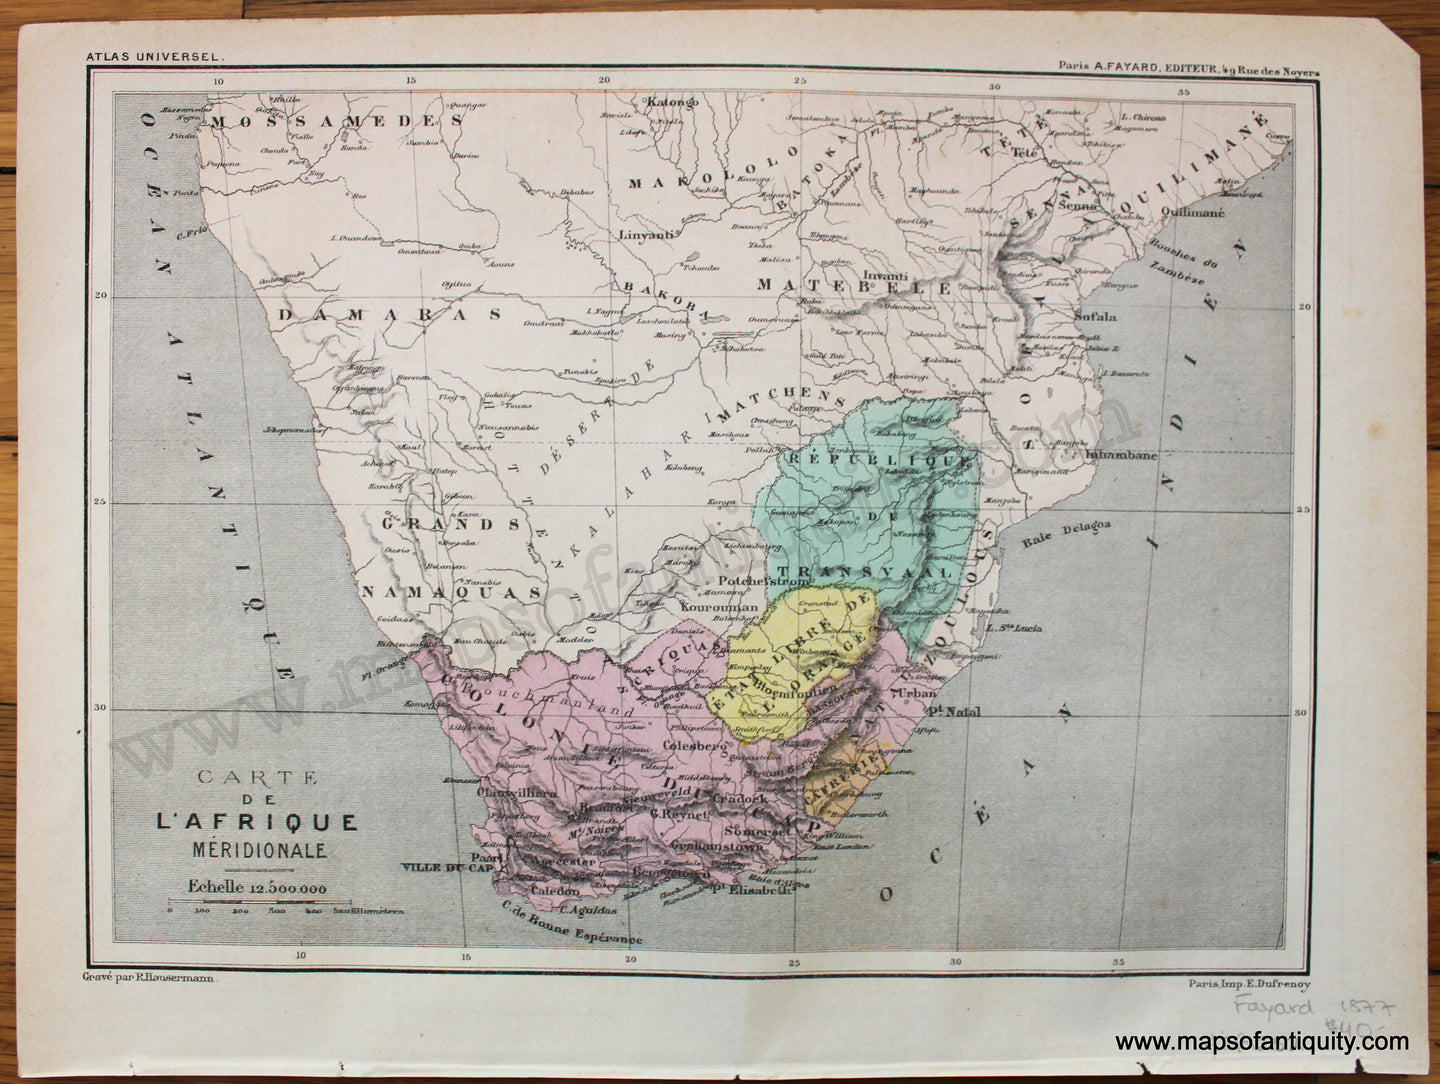 Antique-Printed-Color-Map-Carte-de-l'Afrique-Meridionale-1877-Fayard---1800s-19th-century-Maps-of-Antiquity